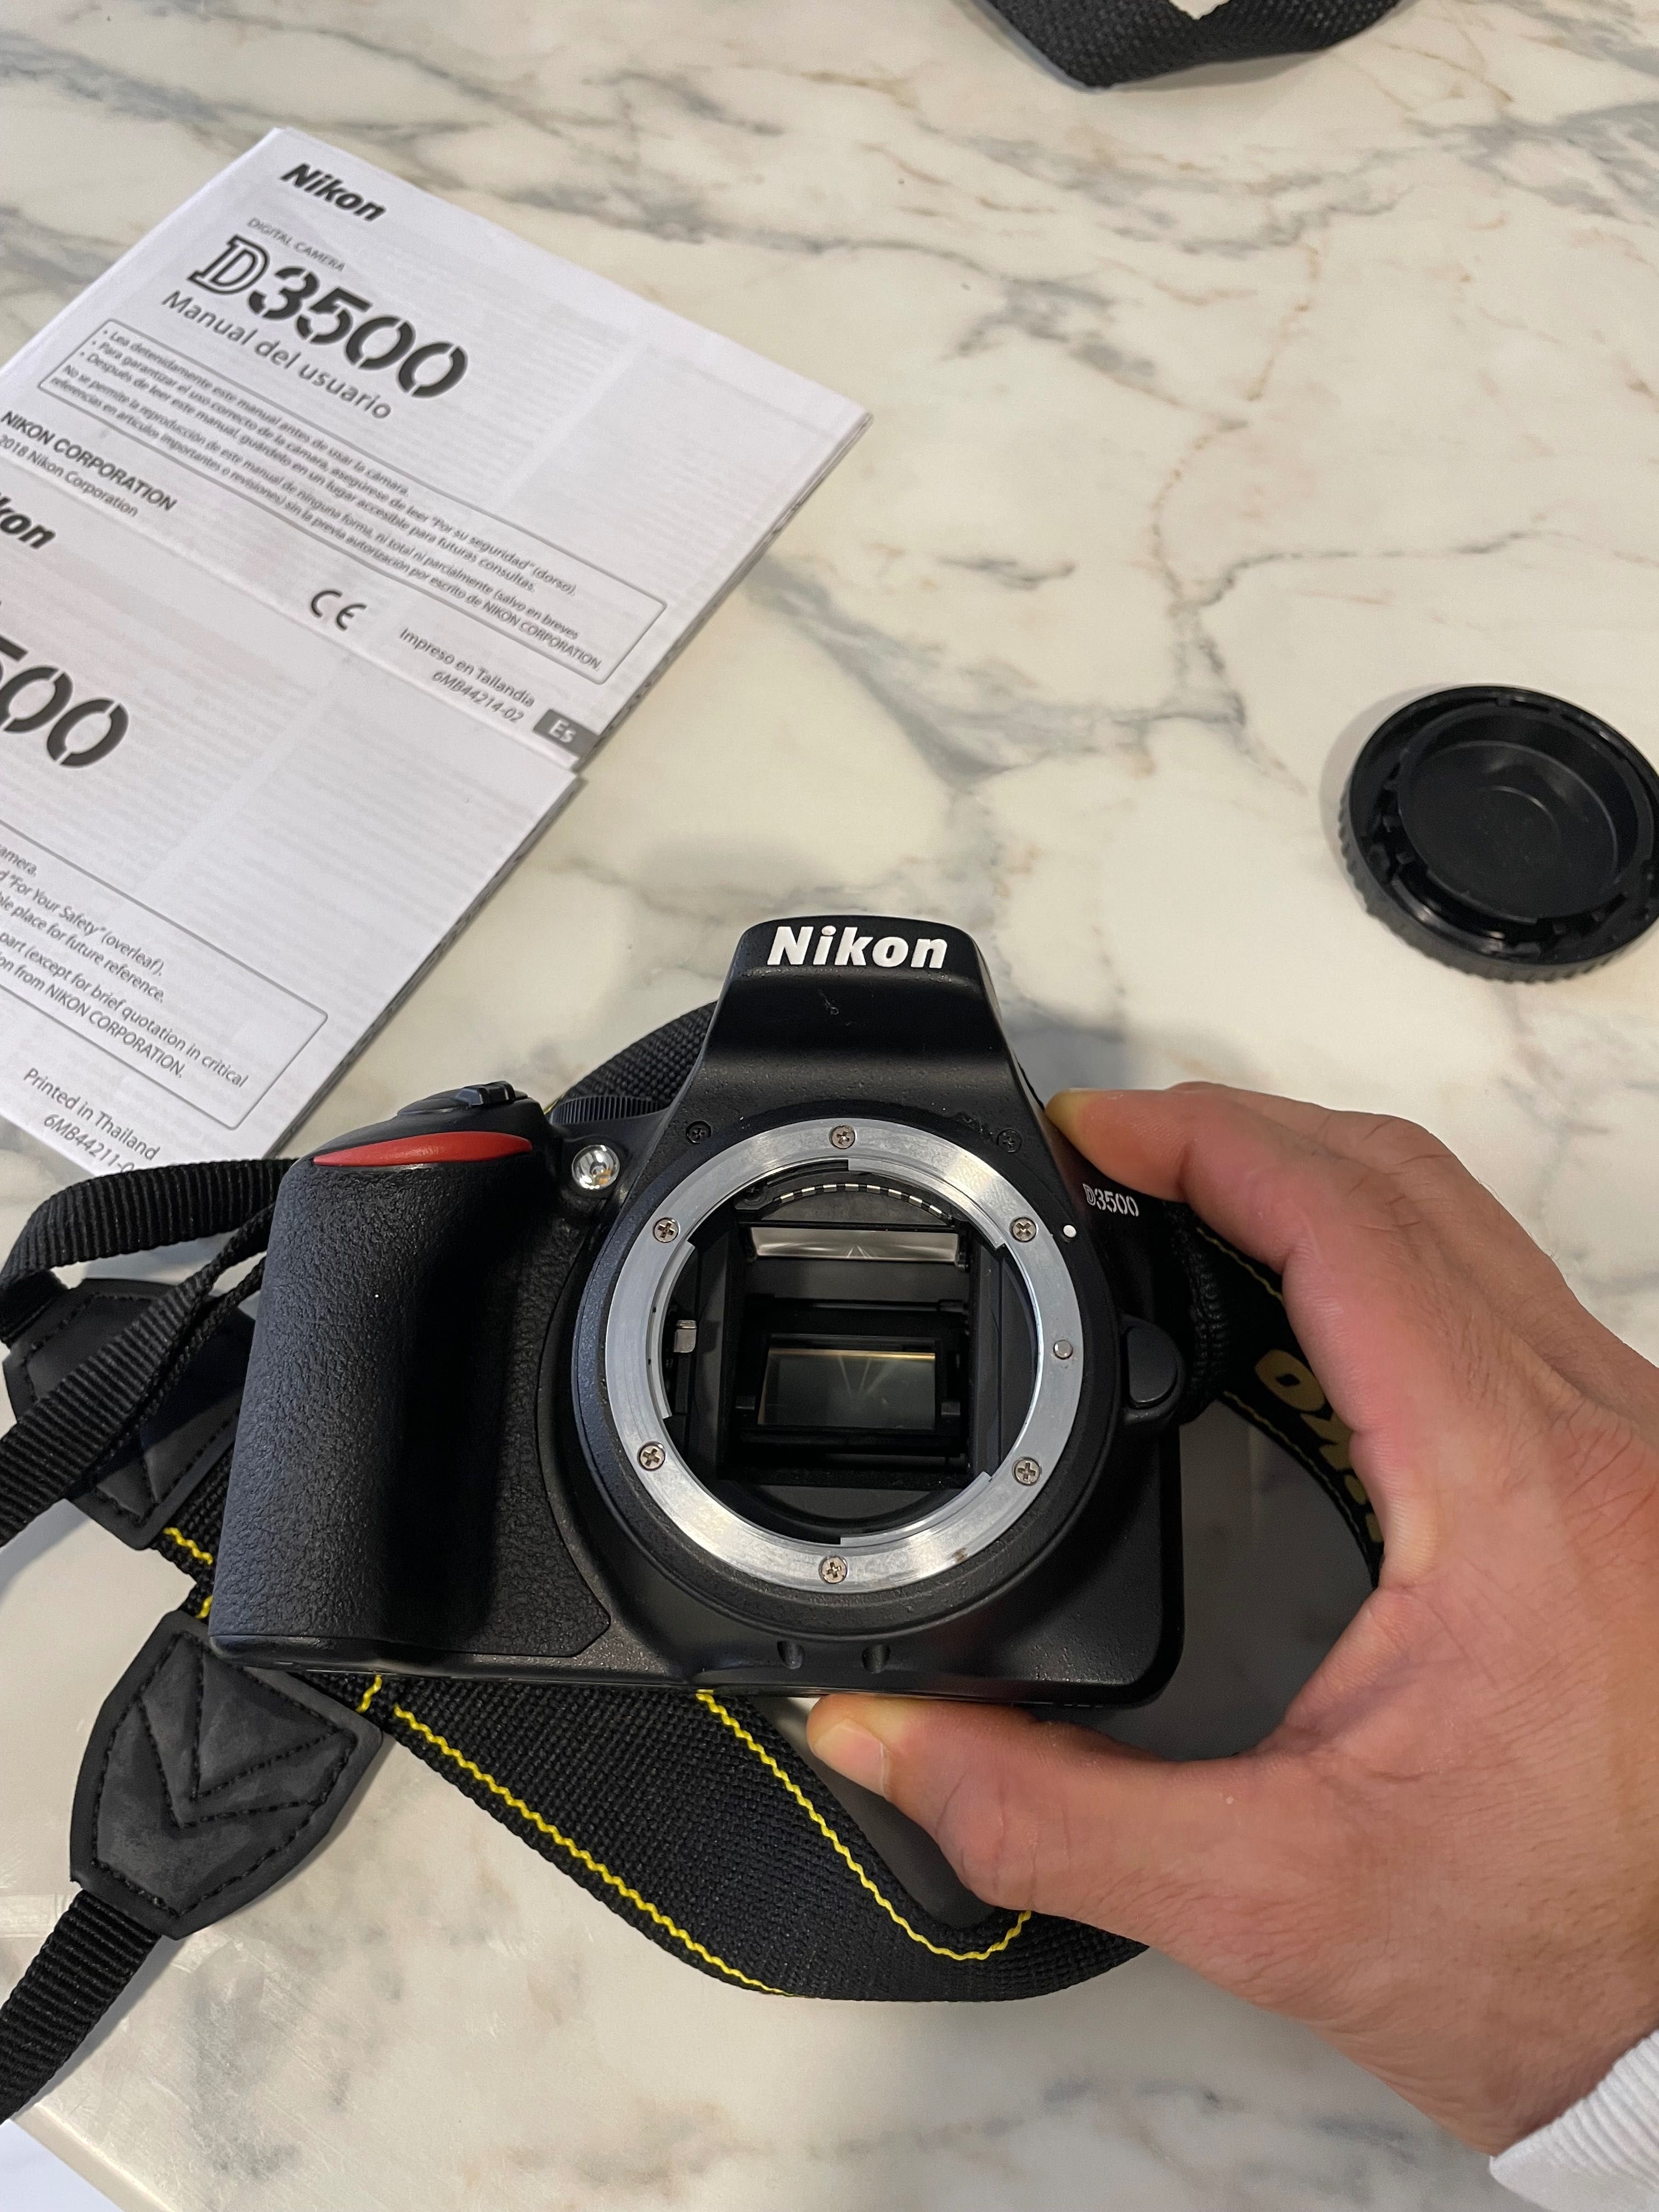 Camera Nikon D3500 + Lente 18-55mm + 32GB - KIT COMPLETO